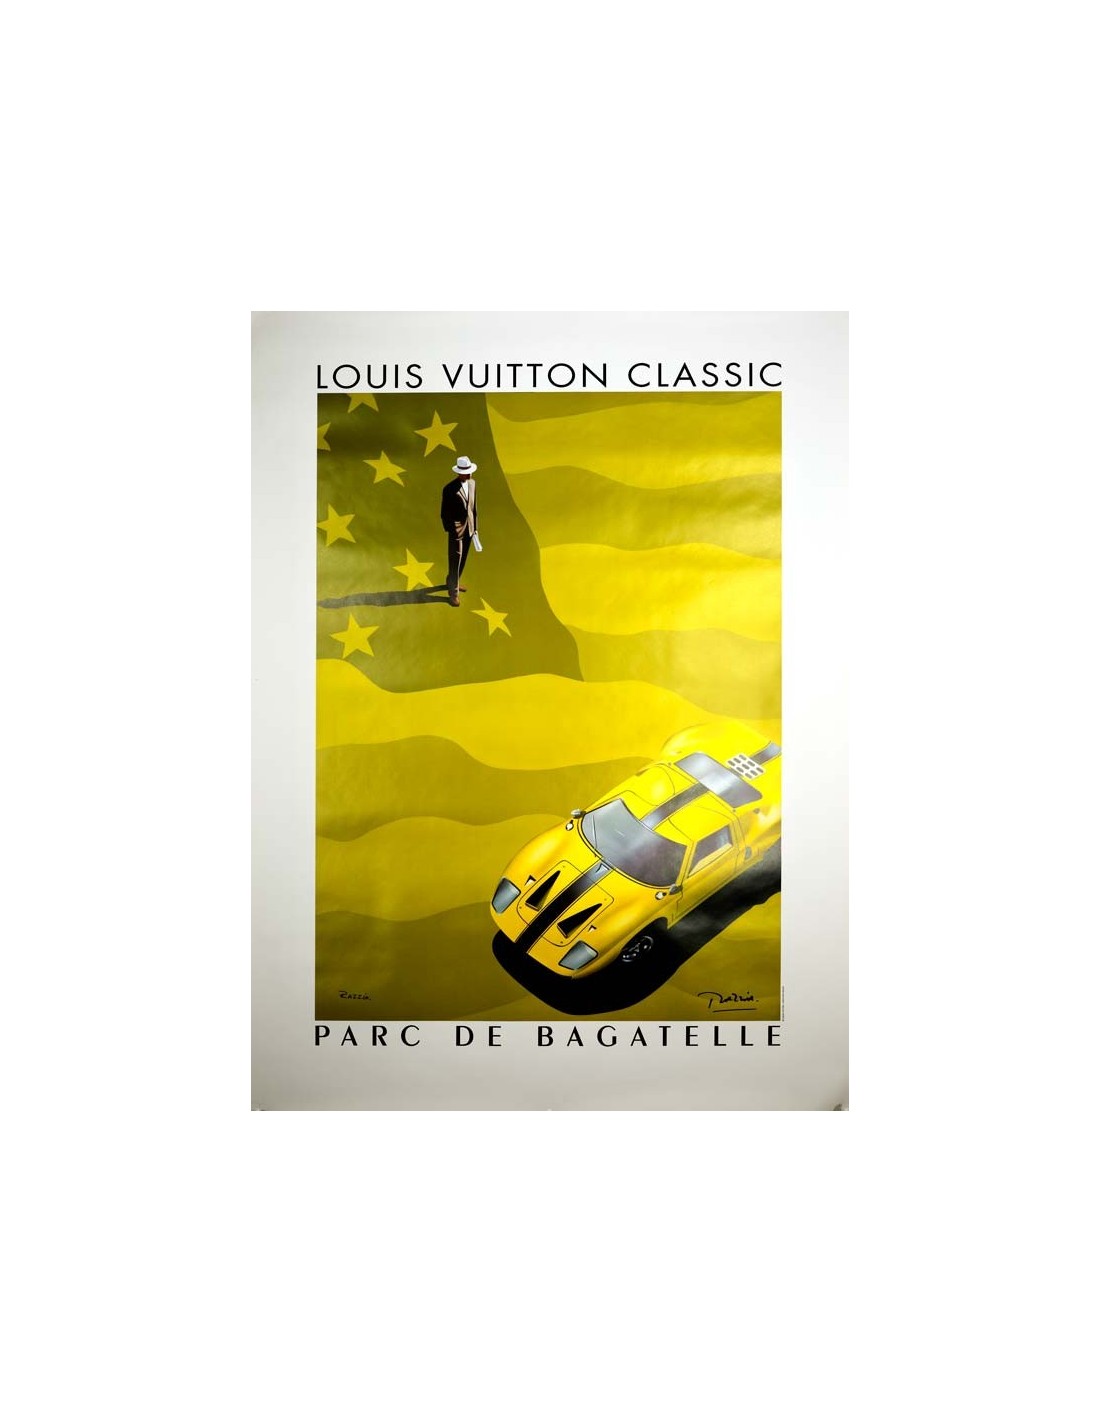 2002 Louis Vuitton Classic: Parc de Bagatelle Poster by Razzia, On Linen